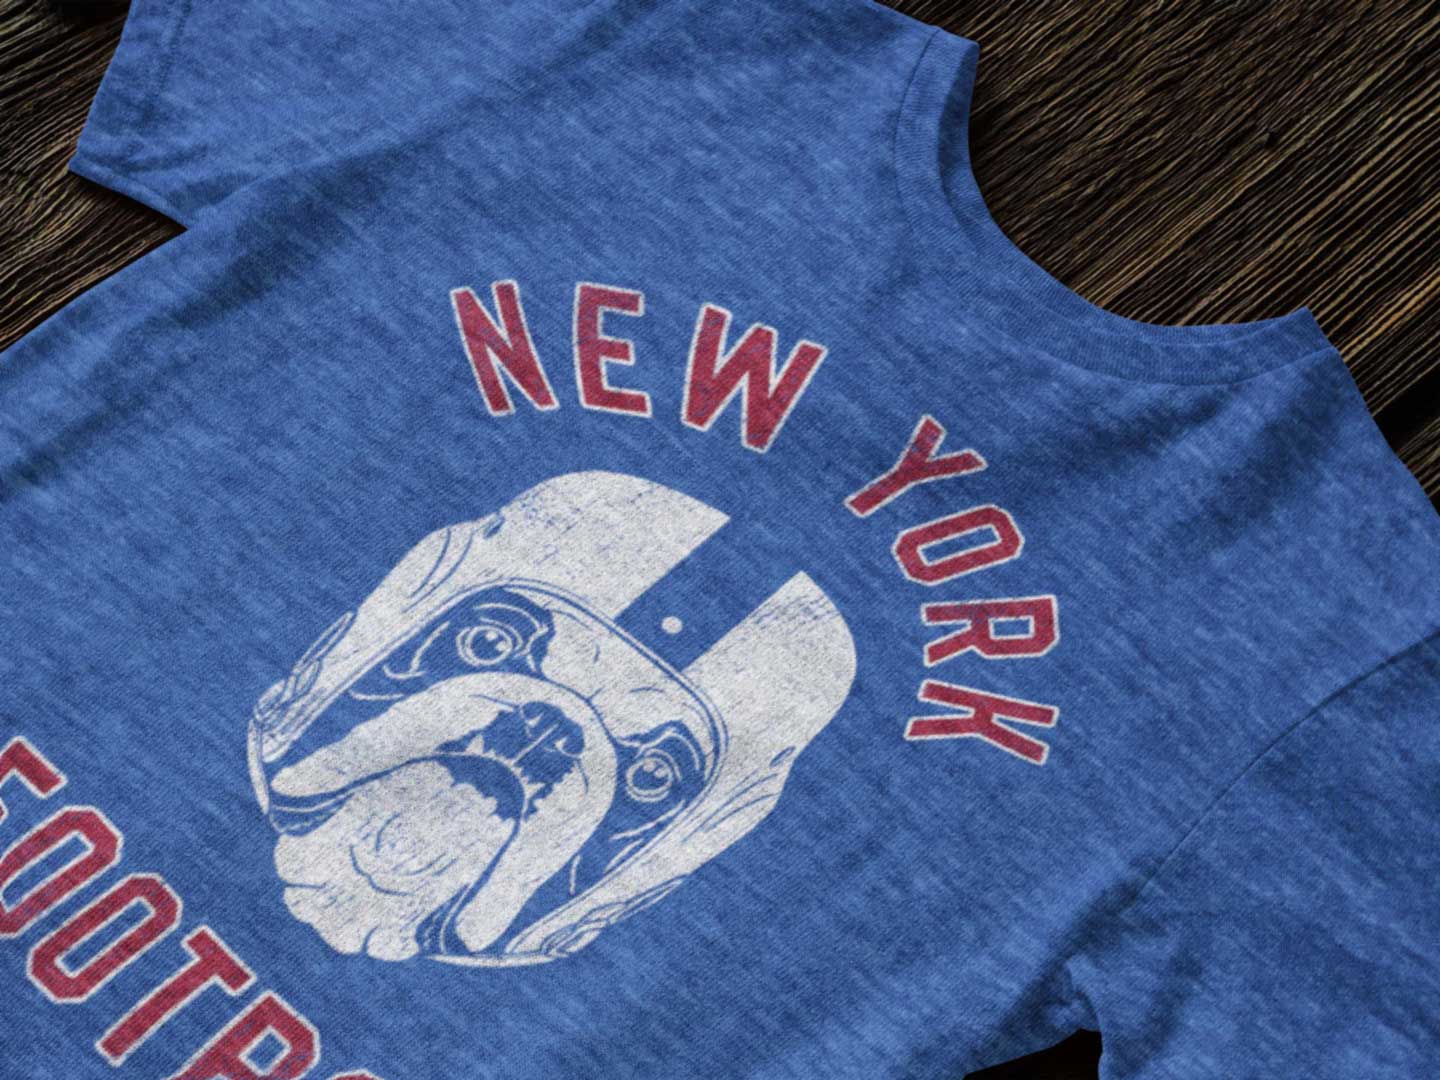 New York Football English Bulldog T-Shirt